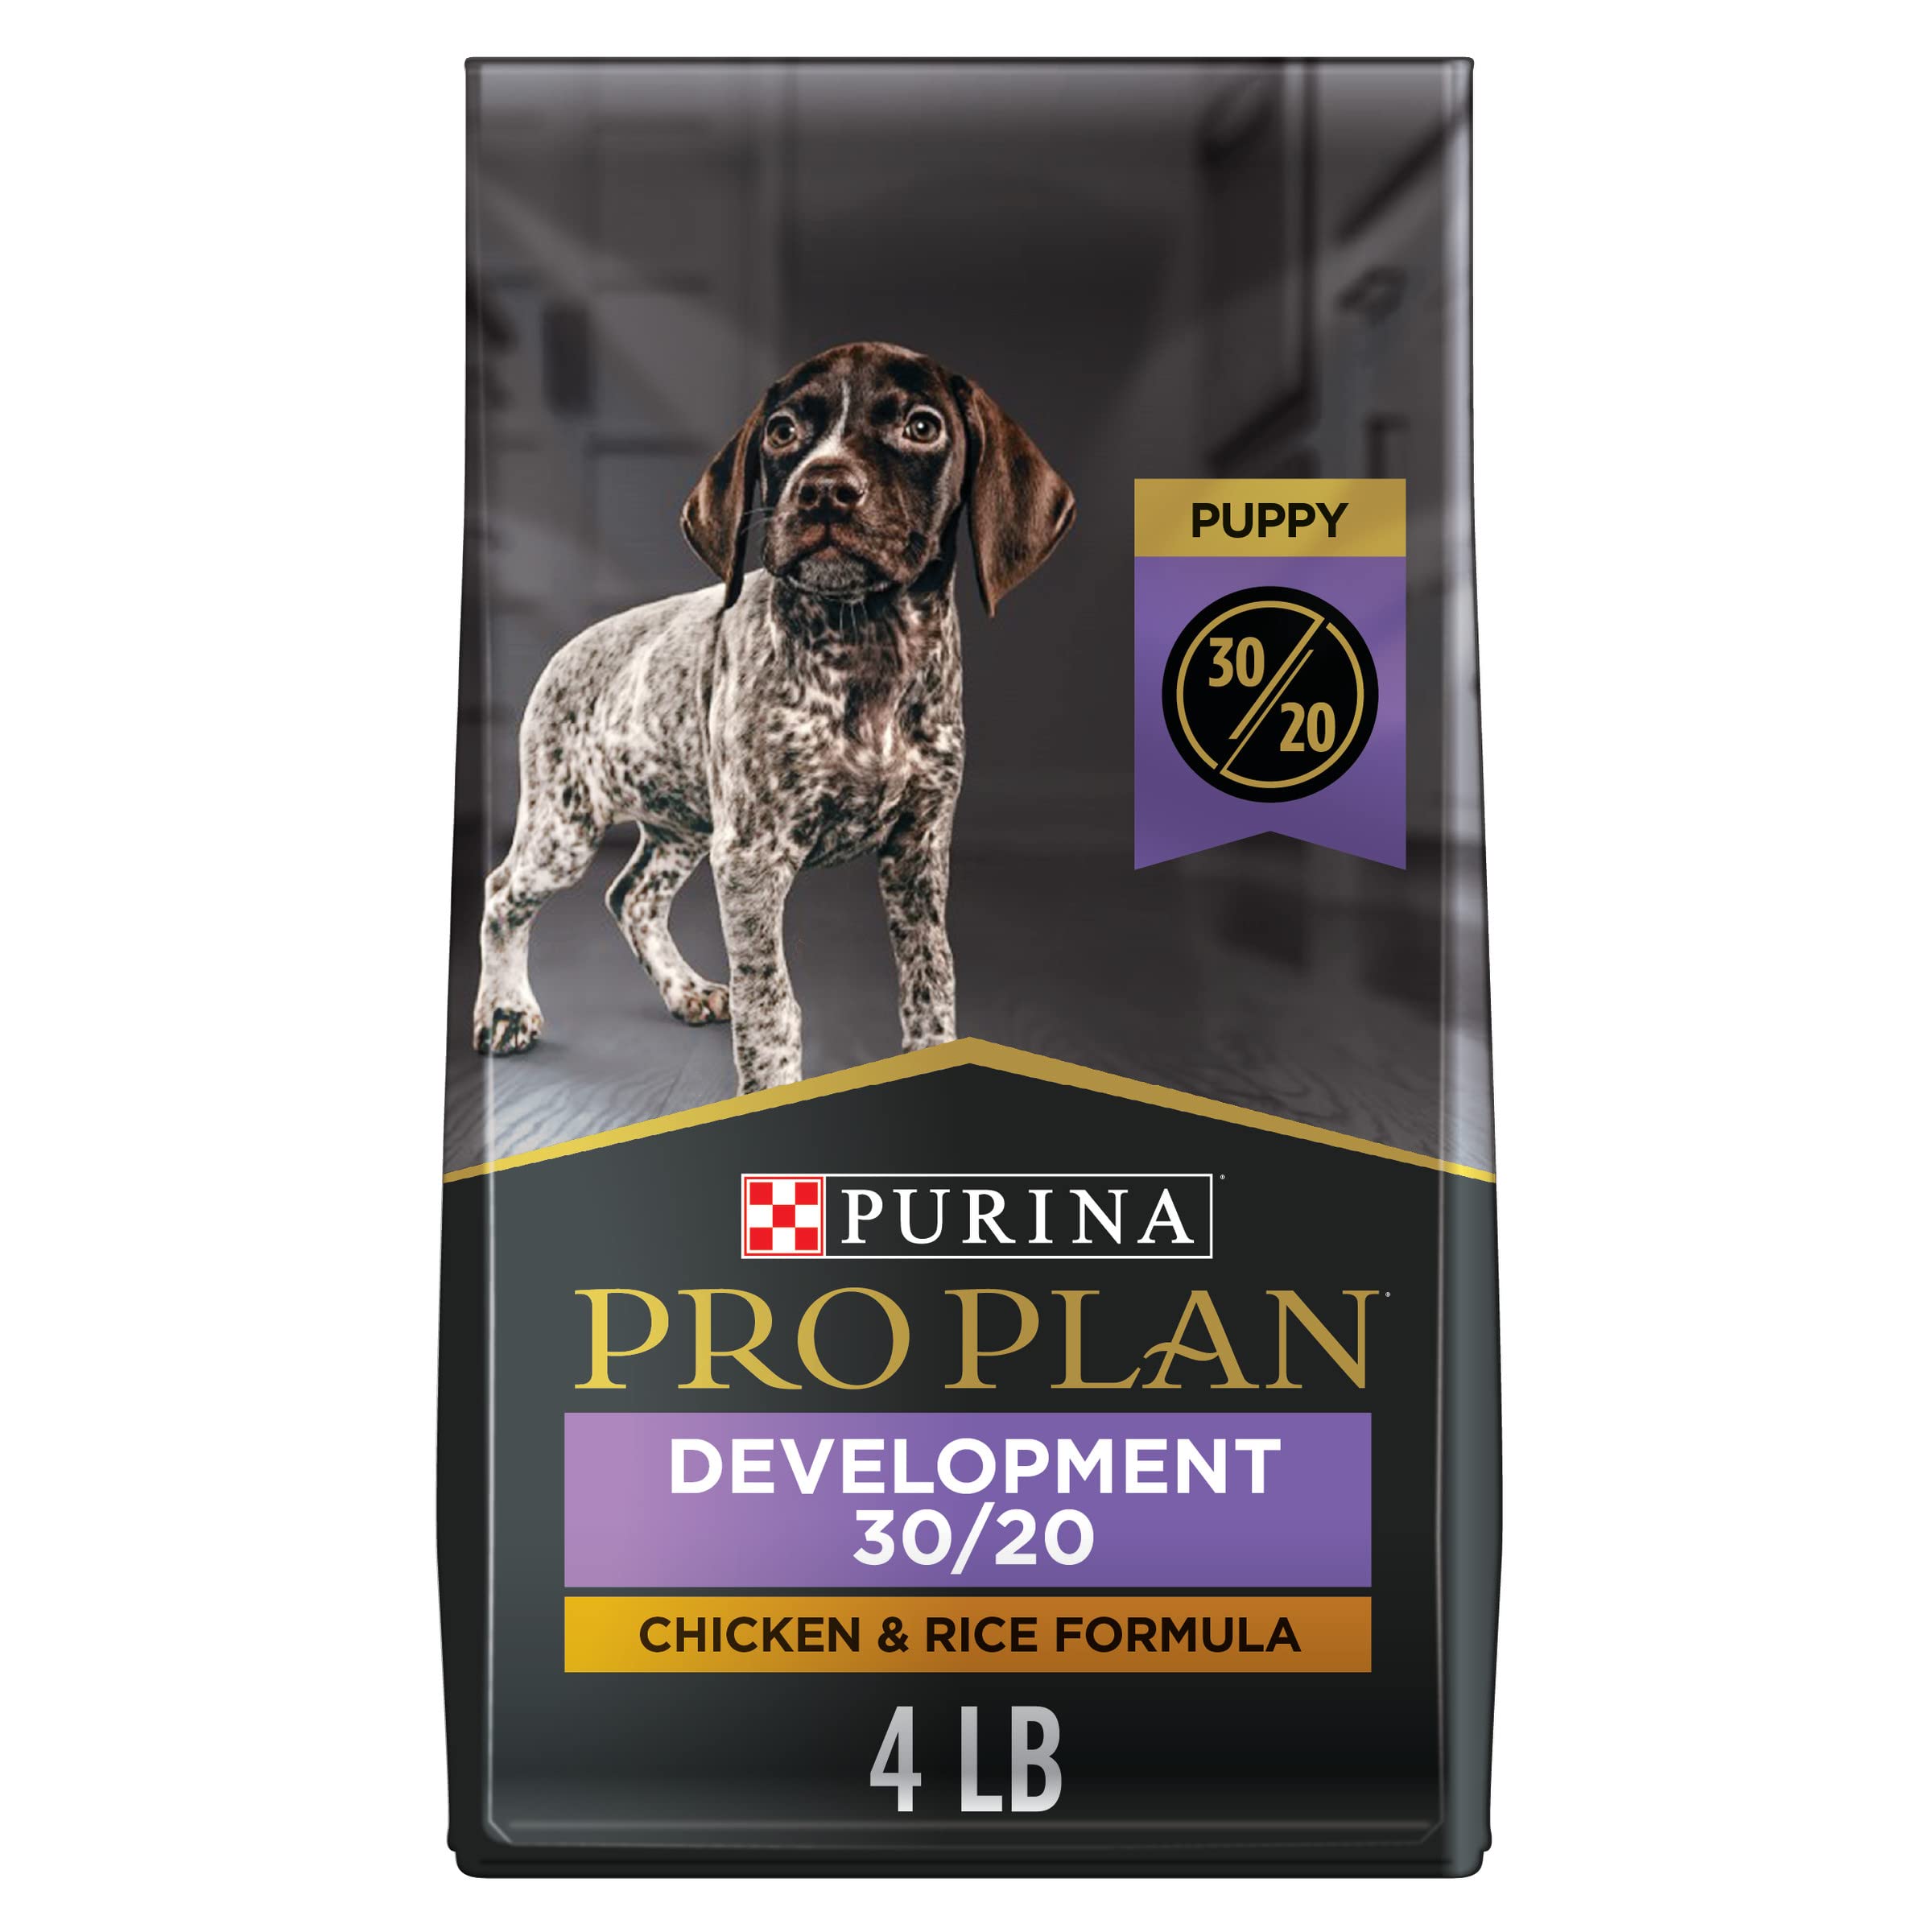 Purina Pro Plan नए पिल्ले का विकास - उच्च प्रोटीन वाला सूखा कुत्ता खाना - चिकन और चावल